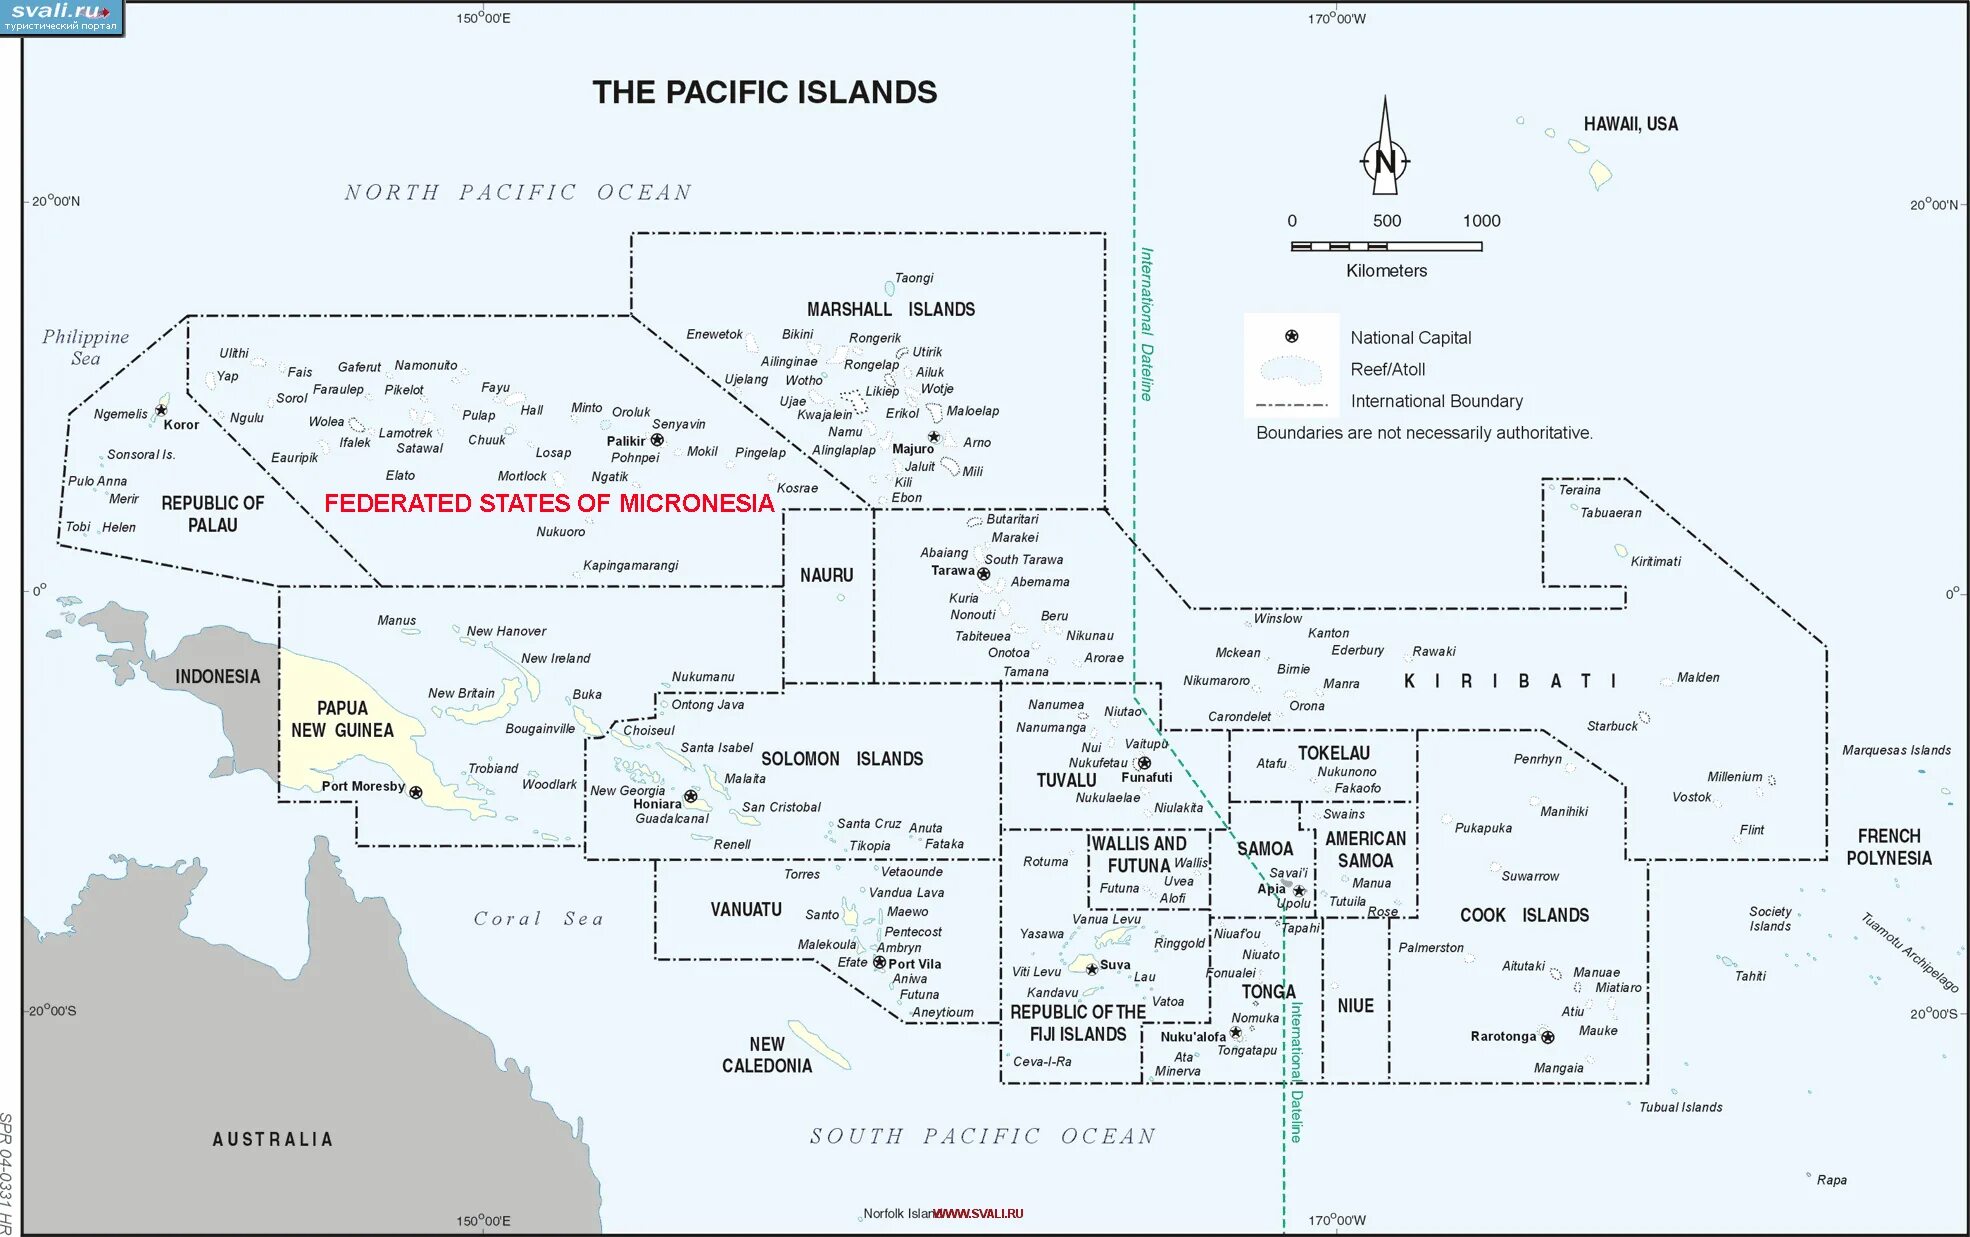 План океании. Федеративные штаты Микронезии на карте. Государство федеративные штаты Микронезии на карте. Штаты Микронезии на карте. Микронезия на карте Океании.